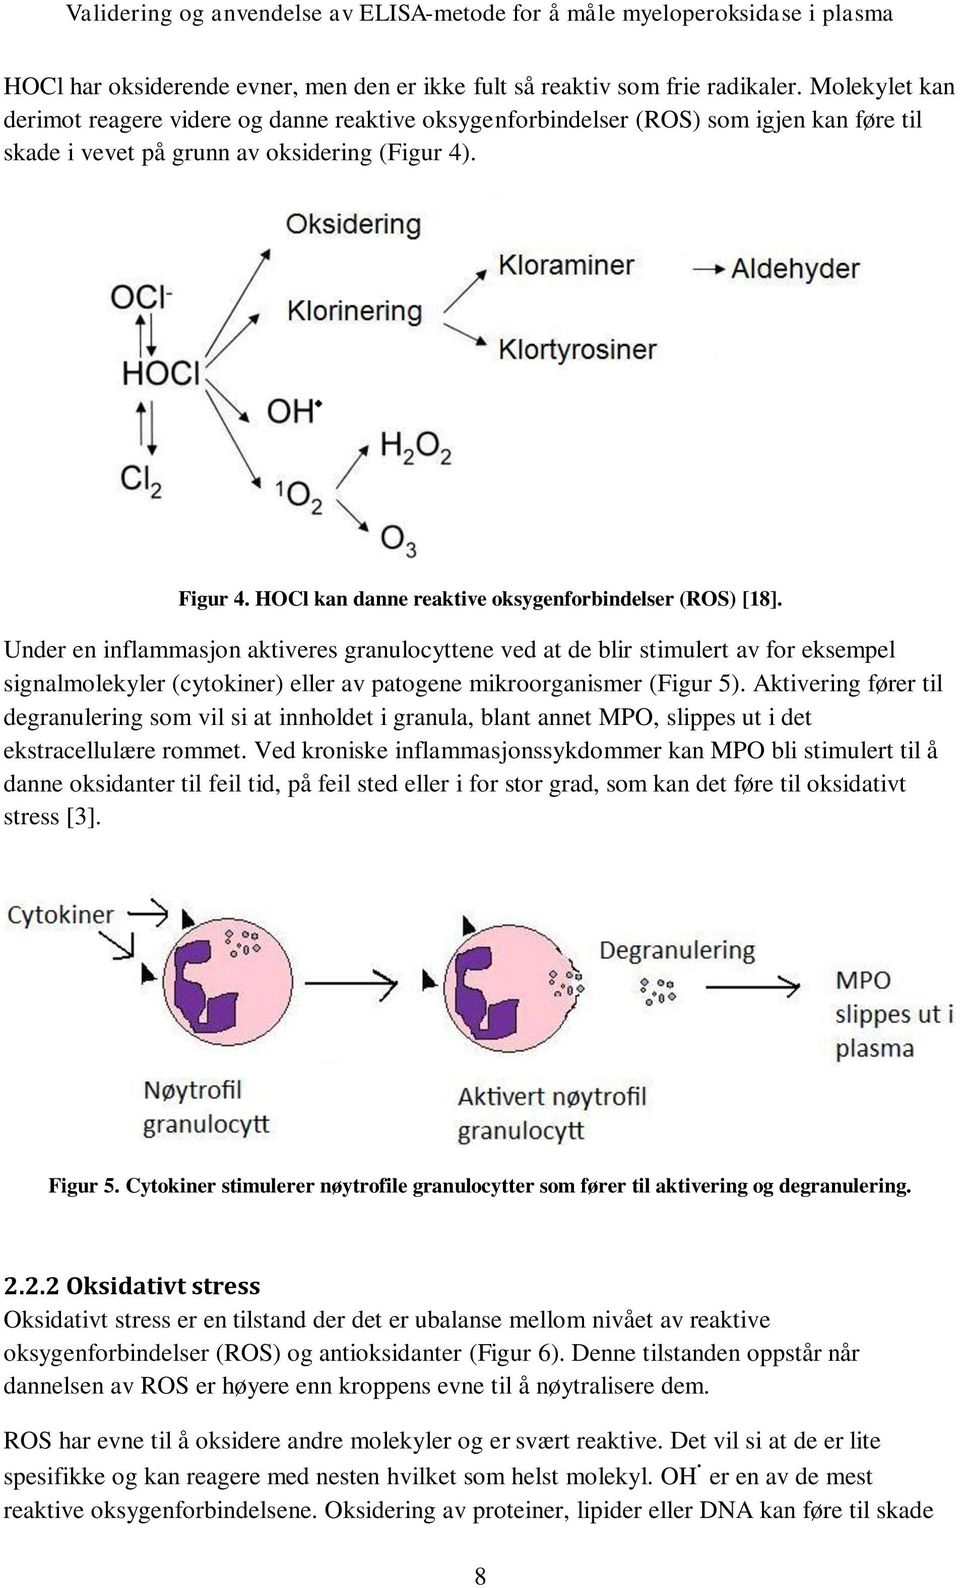 HOCl kan danne reaktive oksygenforbindelser (ROS) [18].